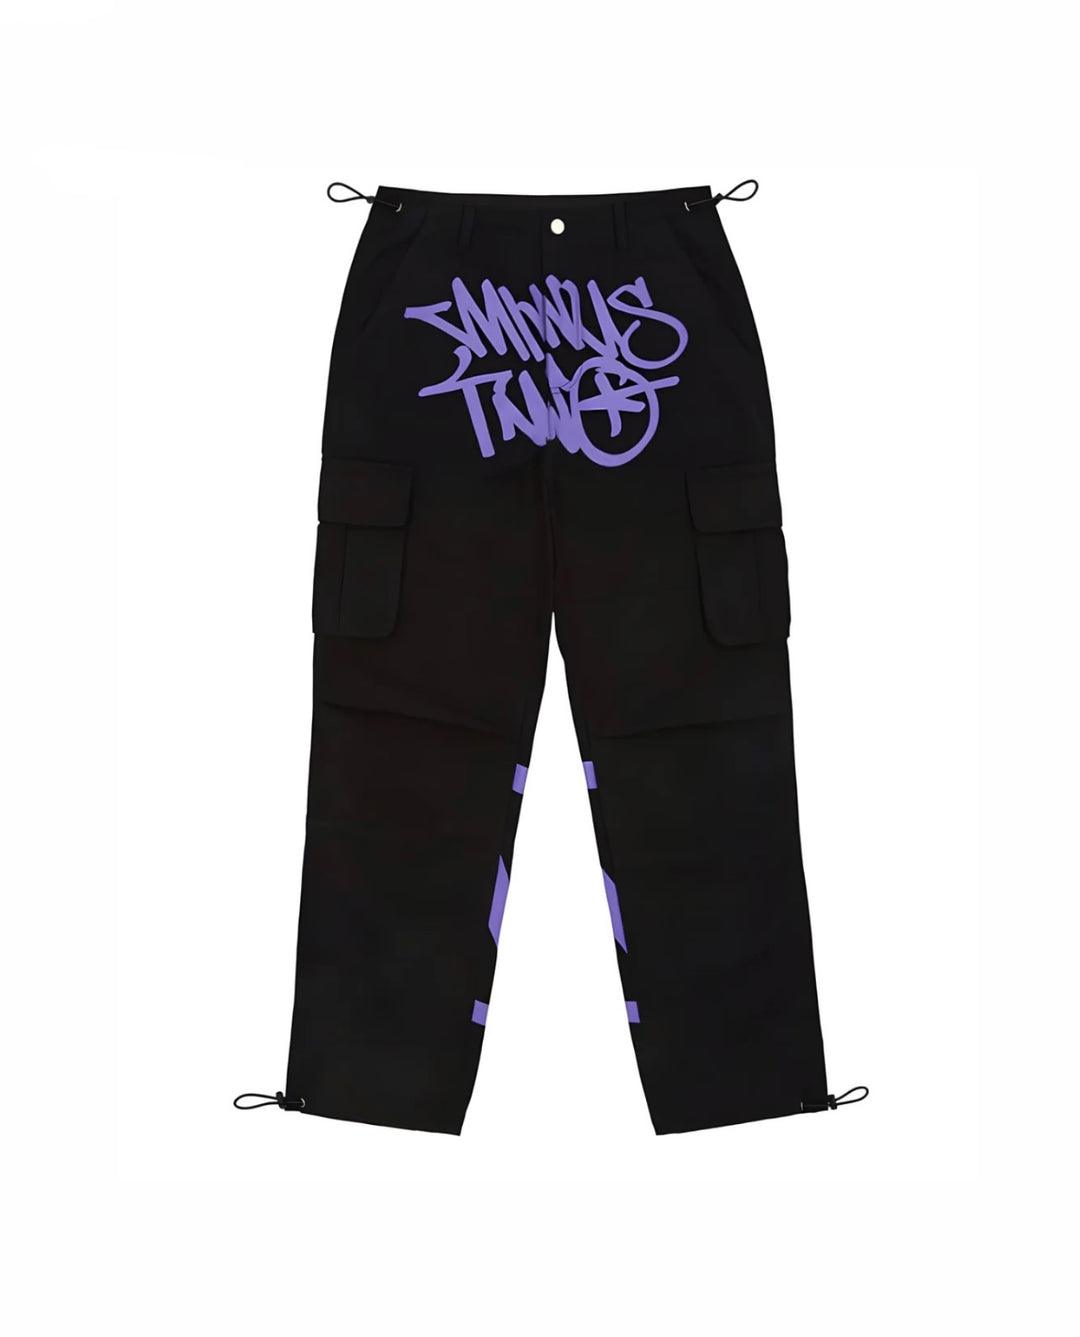 MINUS TWO Cargo Pants - Purple - ワークパンツ/カーゴパンツ